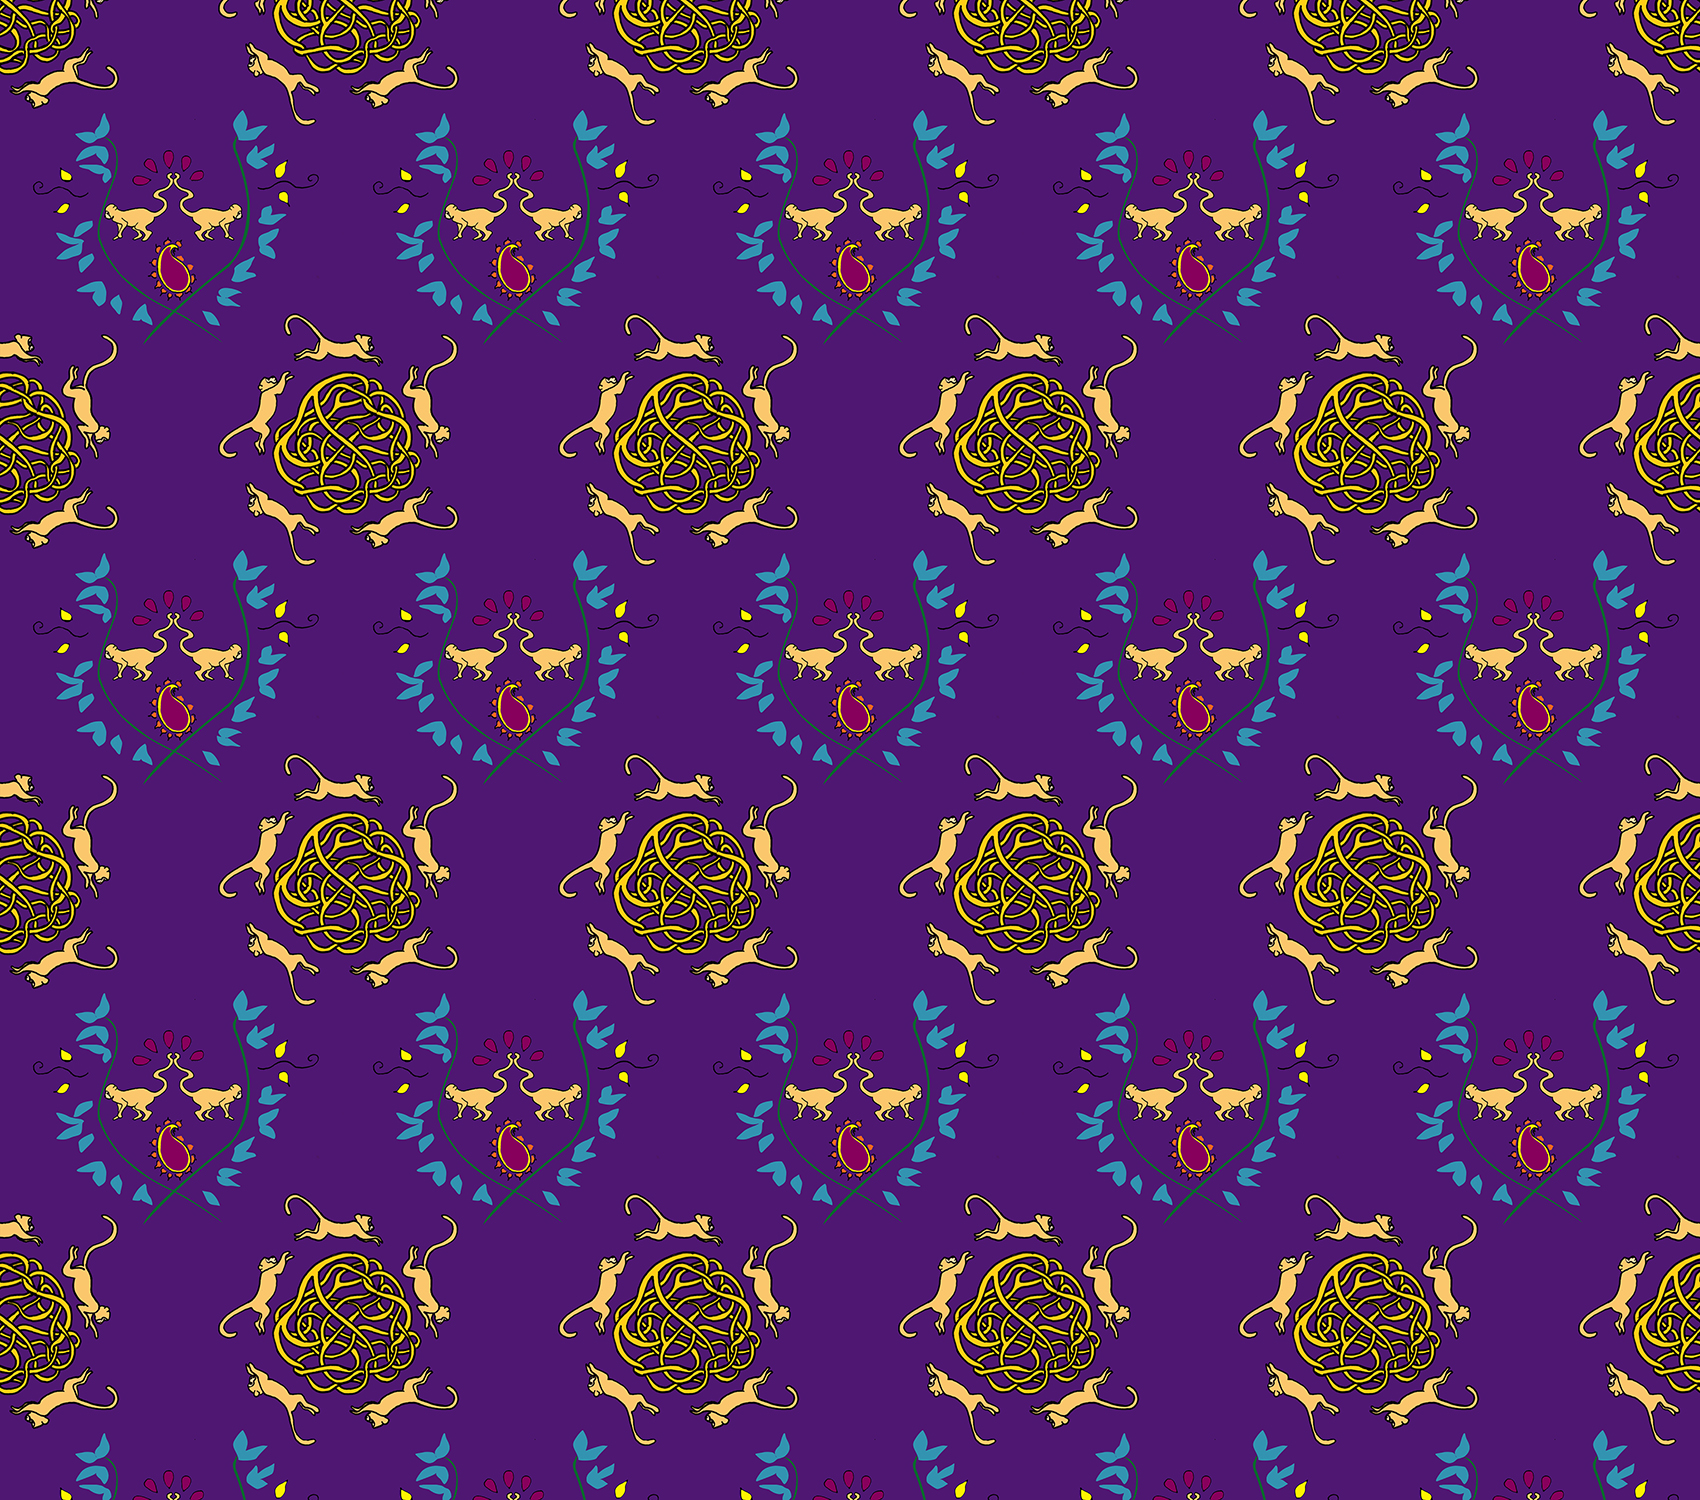 monkey pattern purple.jpg